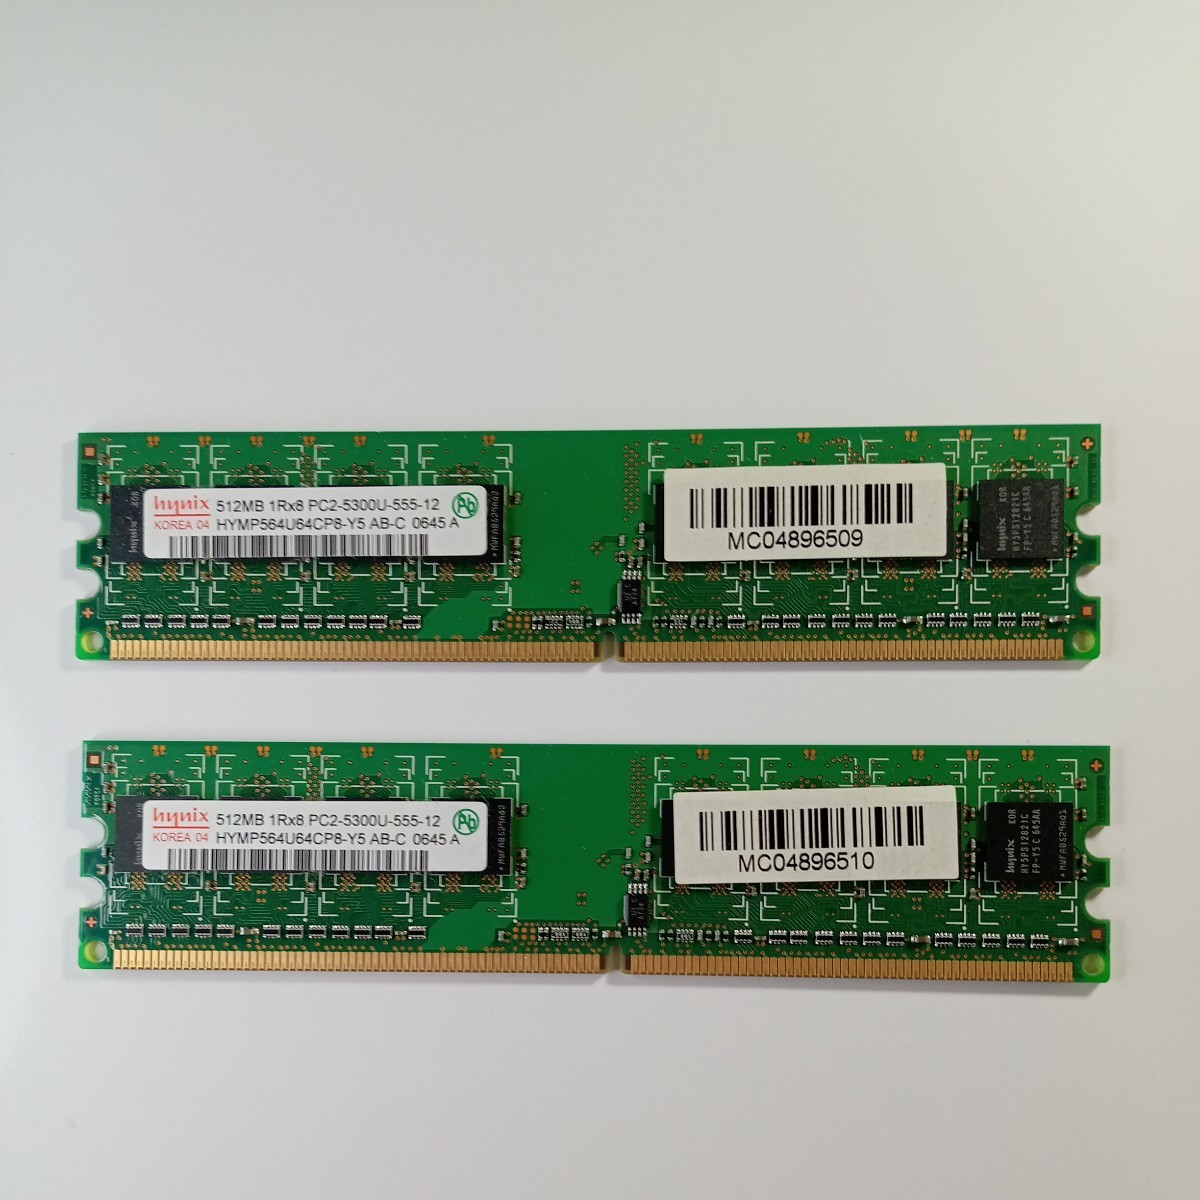 デスクトップ用メモリ HYNIX 1R×8　PC2-5300U-555-12 512MB×2枚_画像1